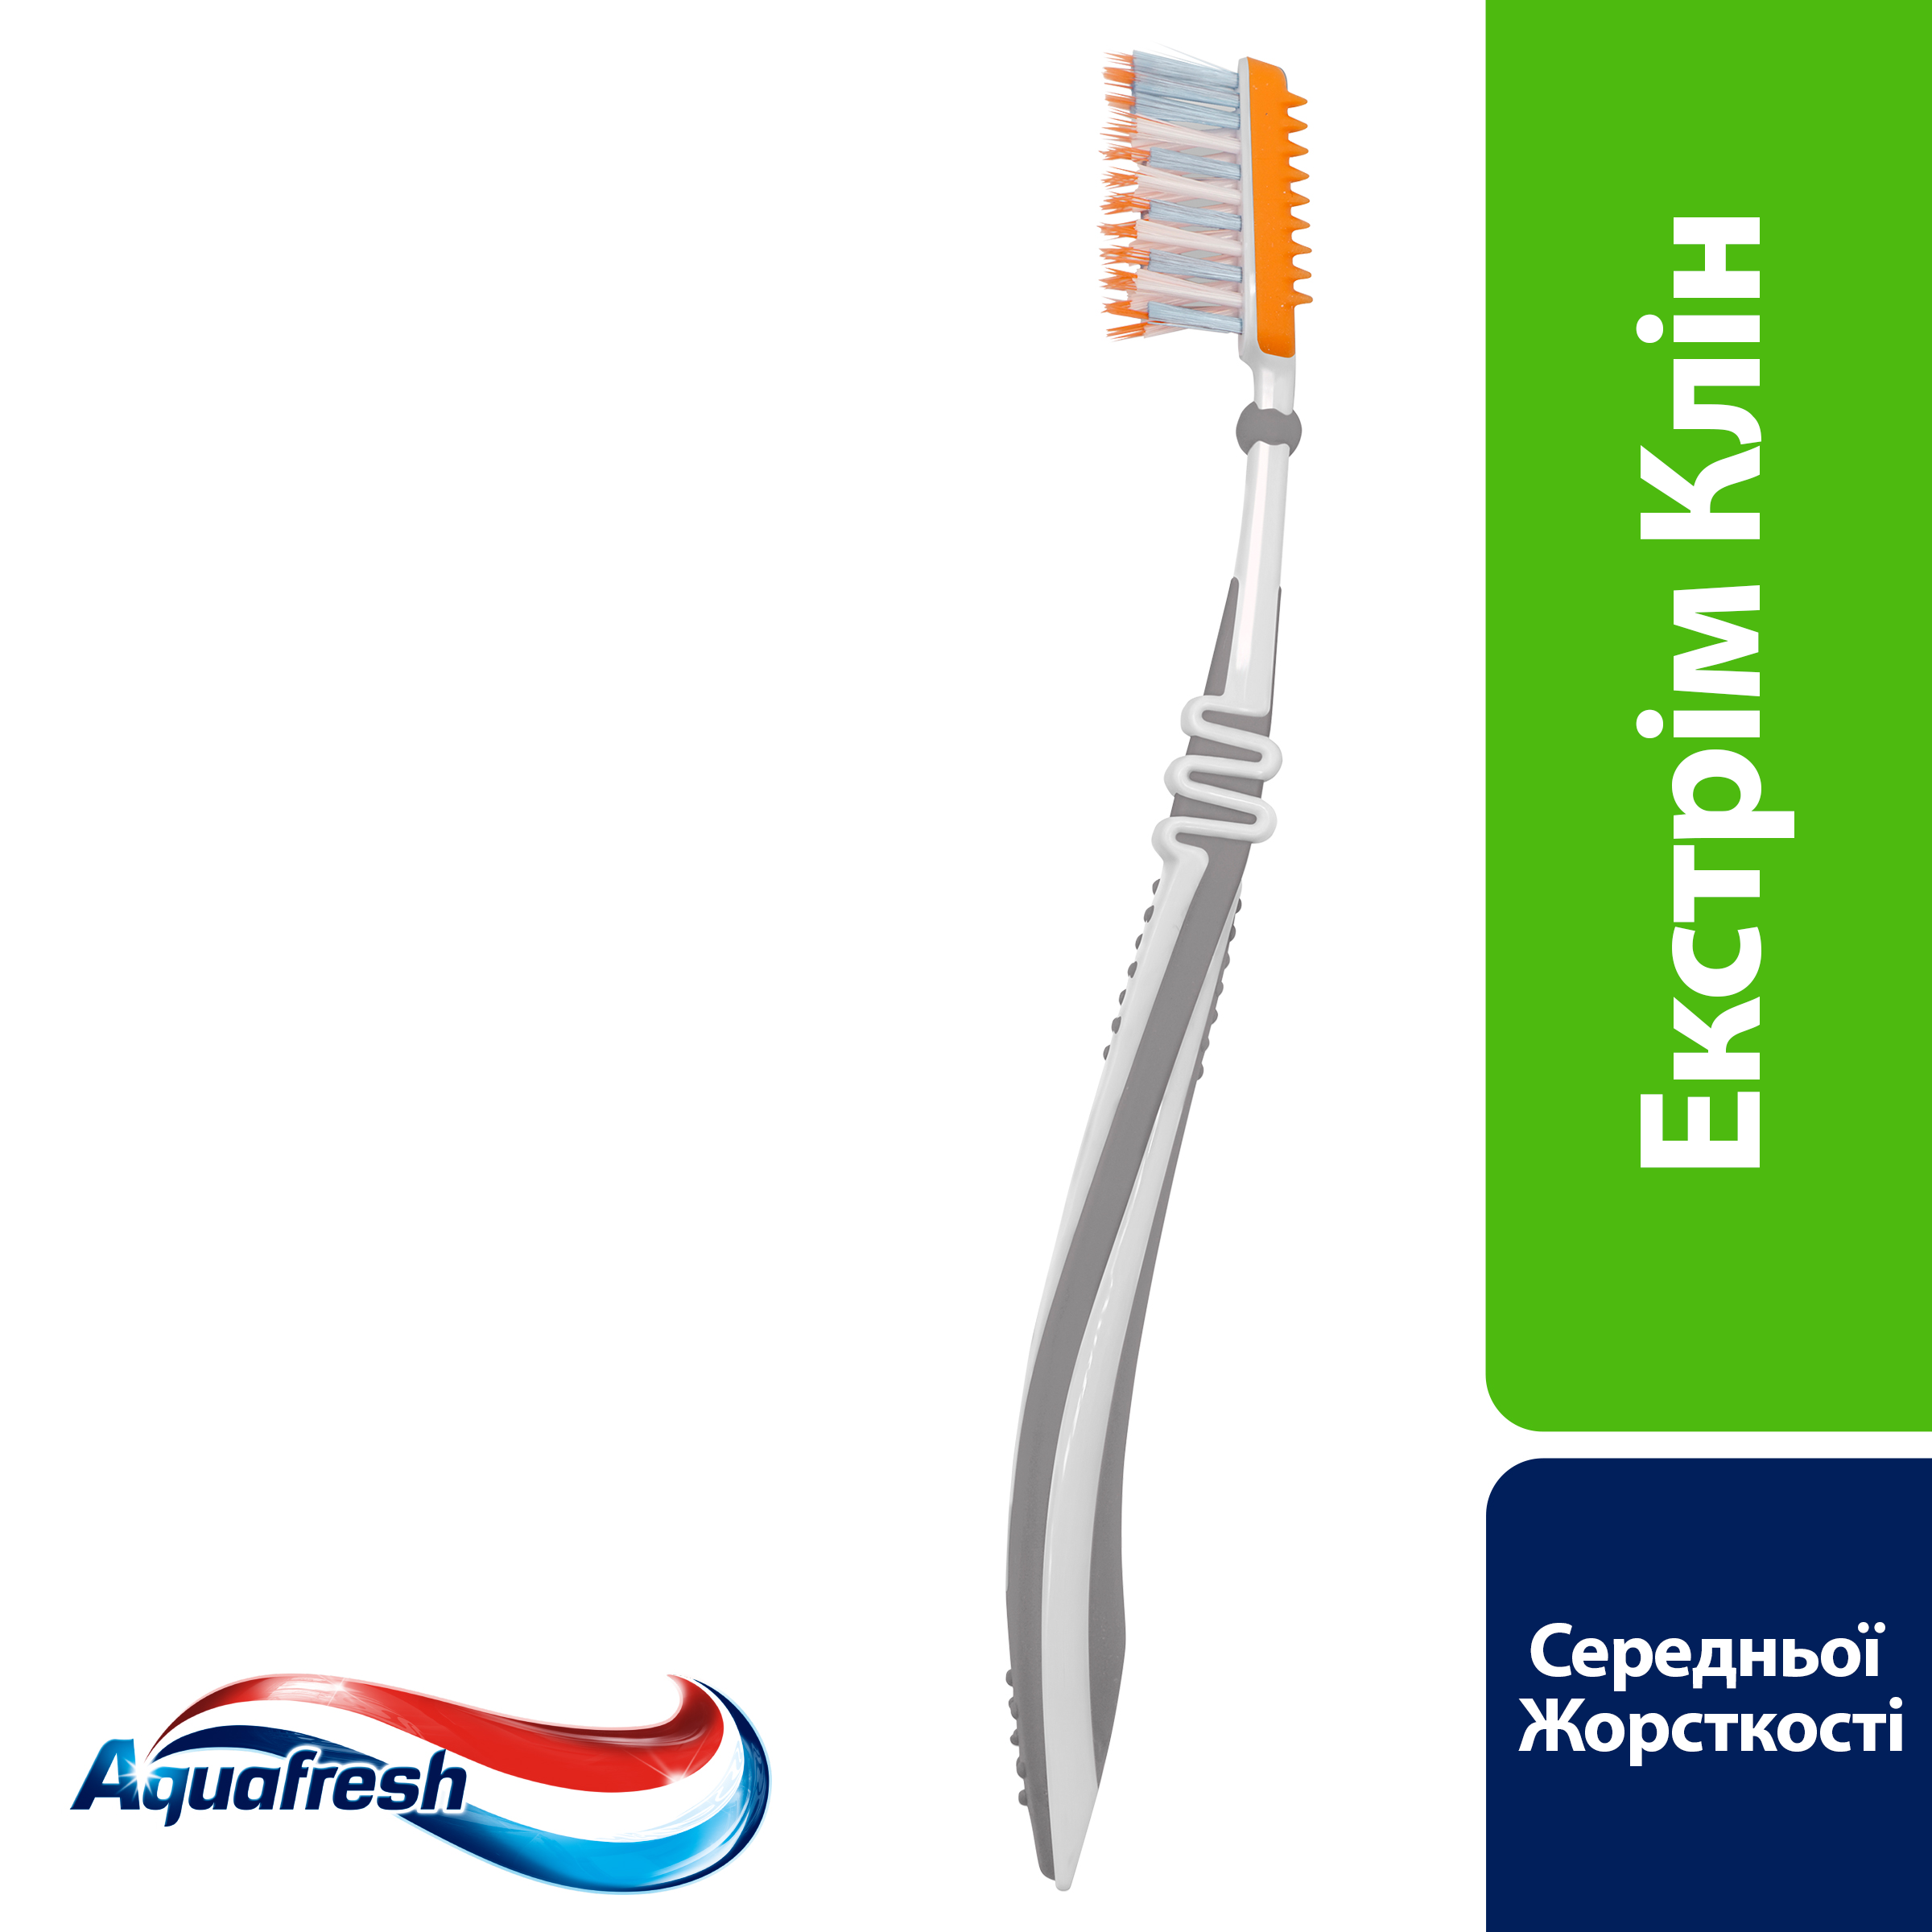 Зубная щетка Aquafresh Extreme Clean Medium 1+1, средняя, в ассортименте, 2 шт. - фото 5